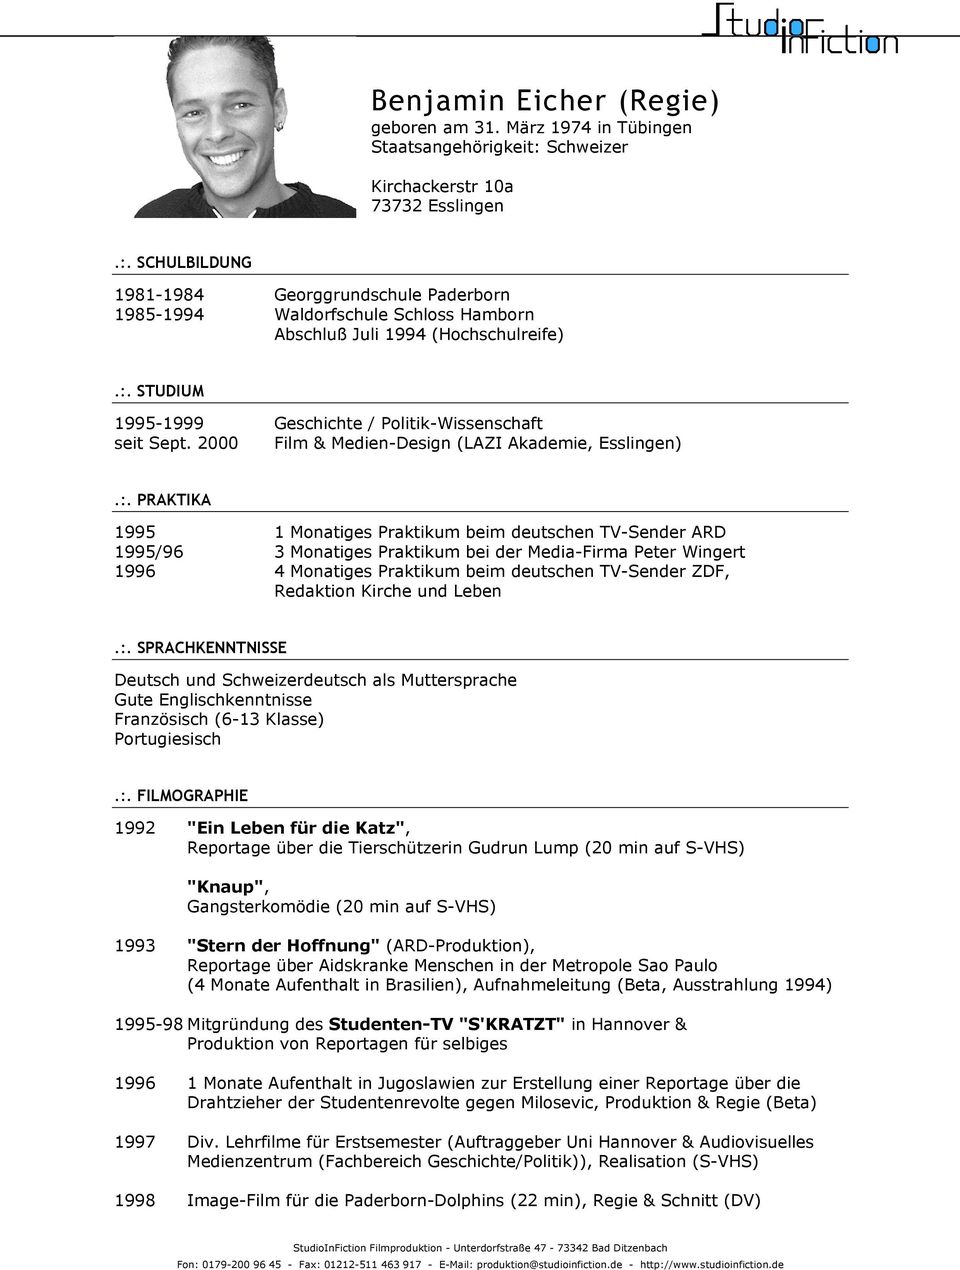 1995-1999 Geschichte / Politik-Wissenschaft seit Sept. 2000 Film & Medien-Design (LAZI Akademie, Esslingen).:.